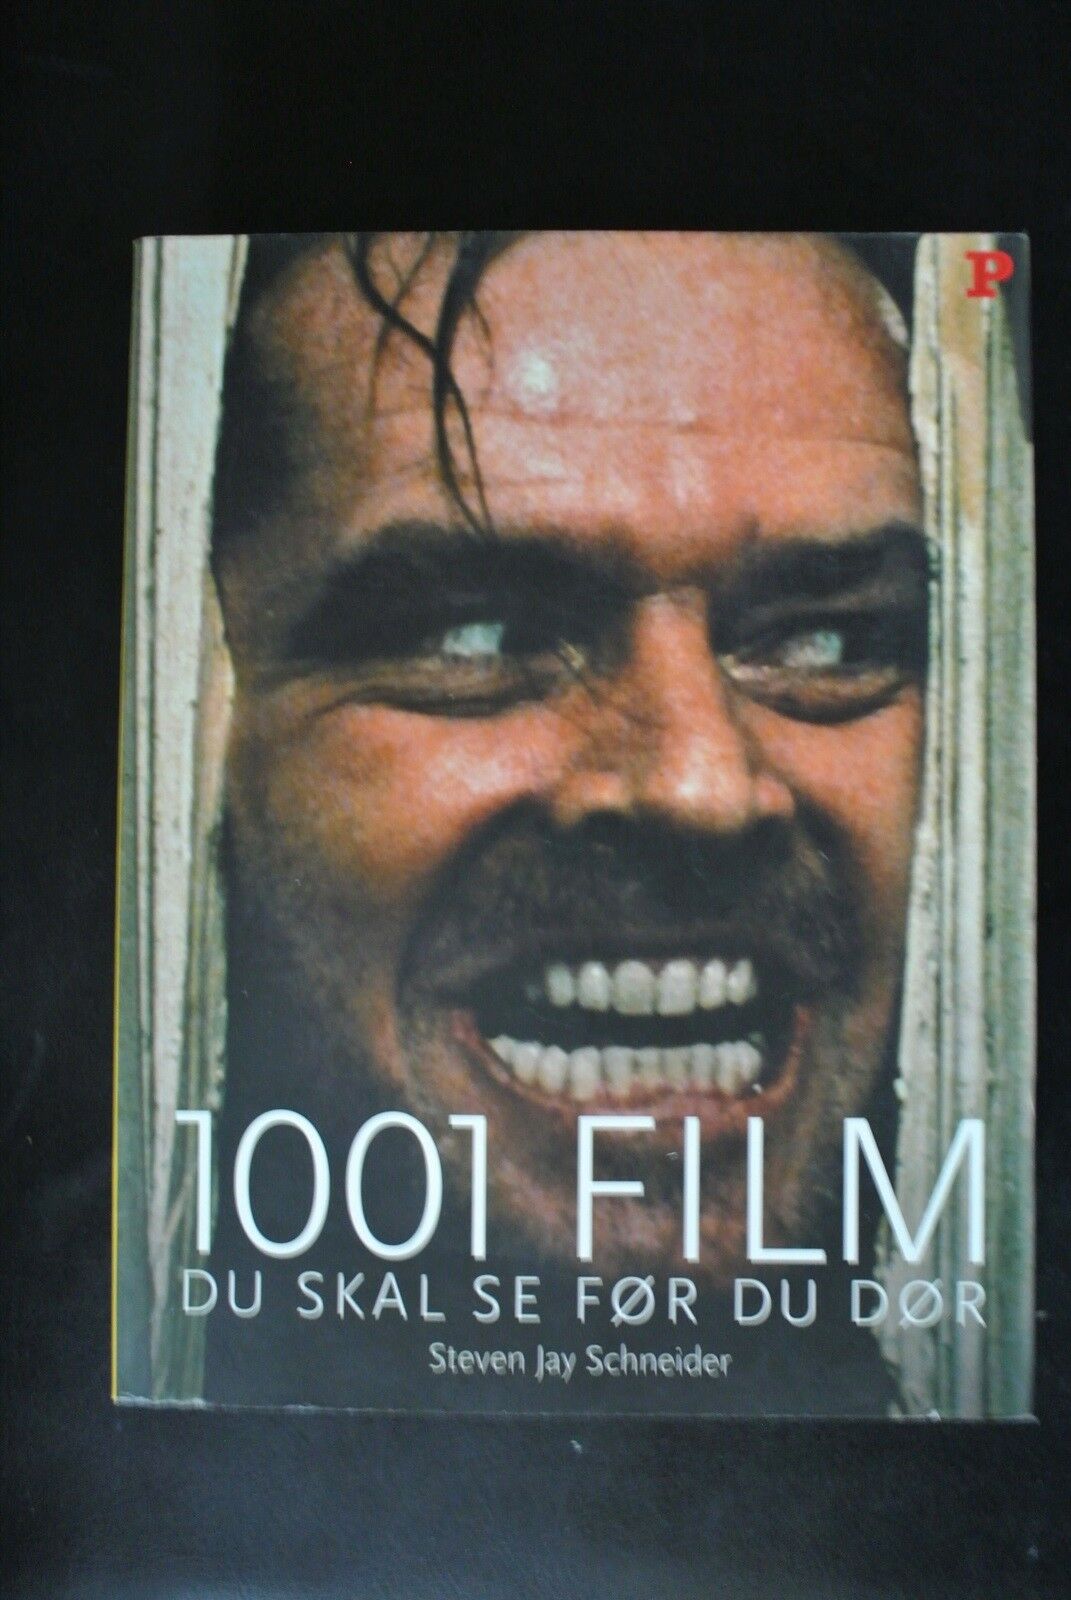 Maxim søsyge Forvirre 1001 film du skal se før du dør, af - dba.dk - Køb og Salg af Nyt og Brugt